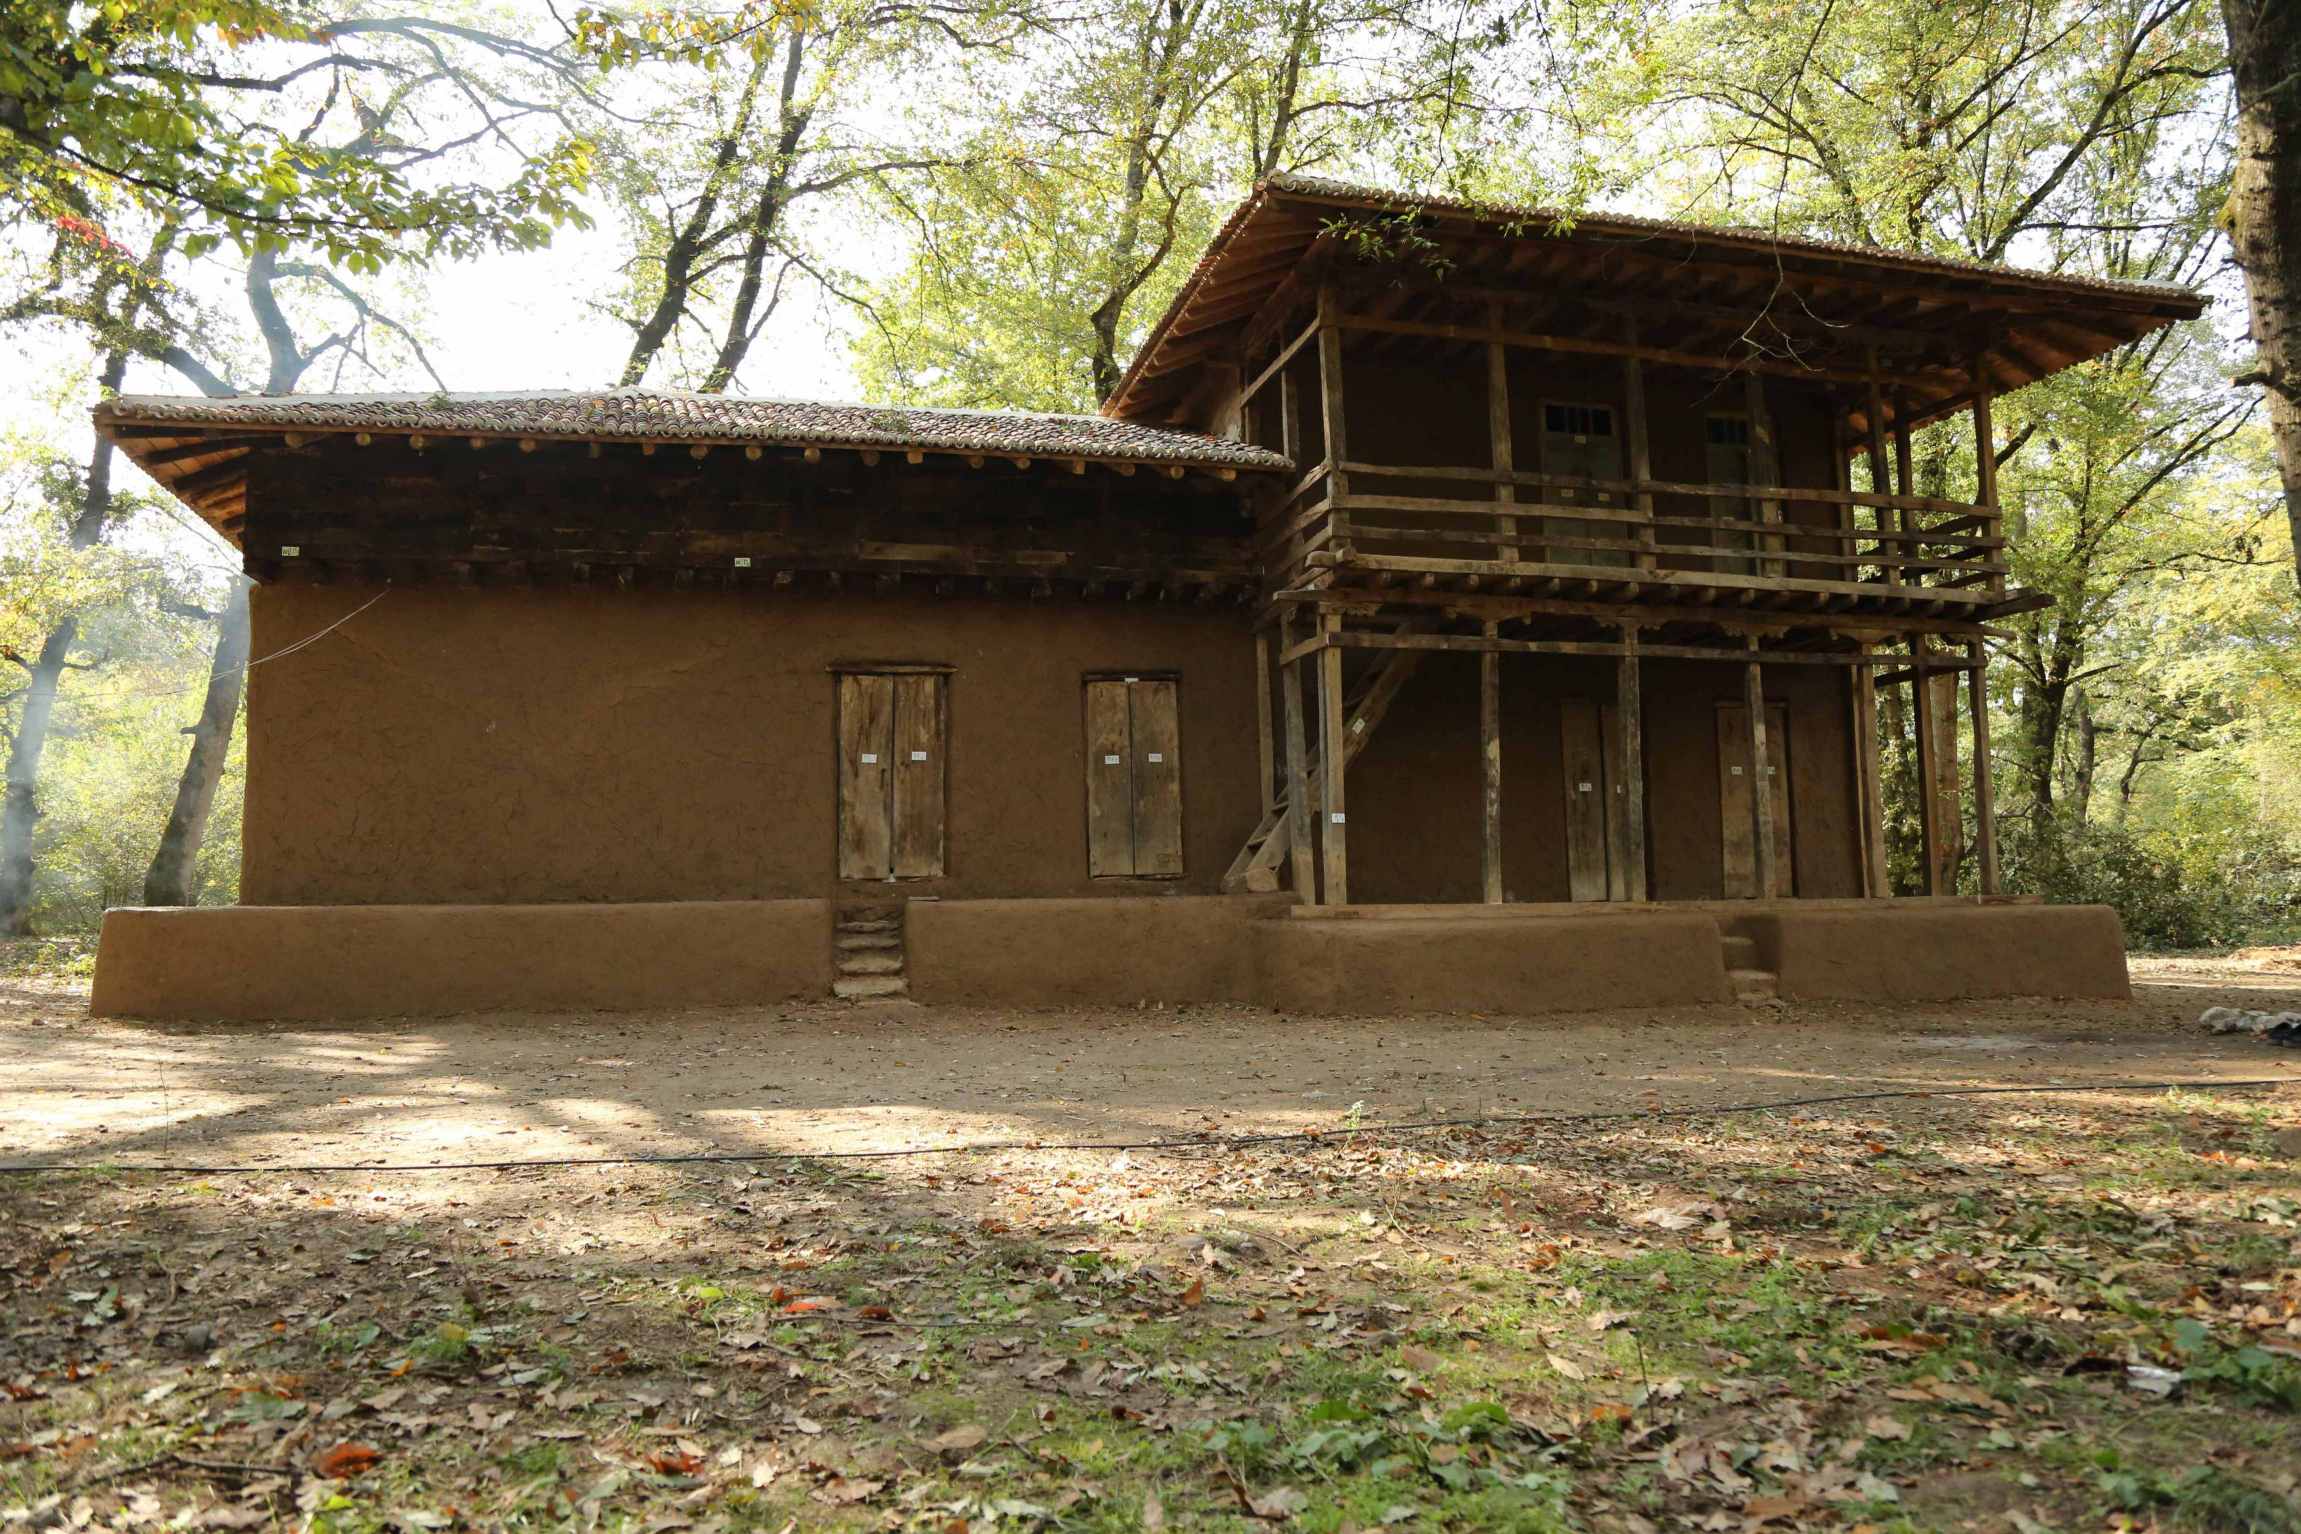 موزه میراث روستایی گلستان در پارک جنگلی قرق گرگان میراث فرهنگی گردشگری